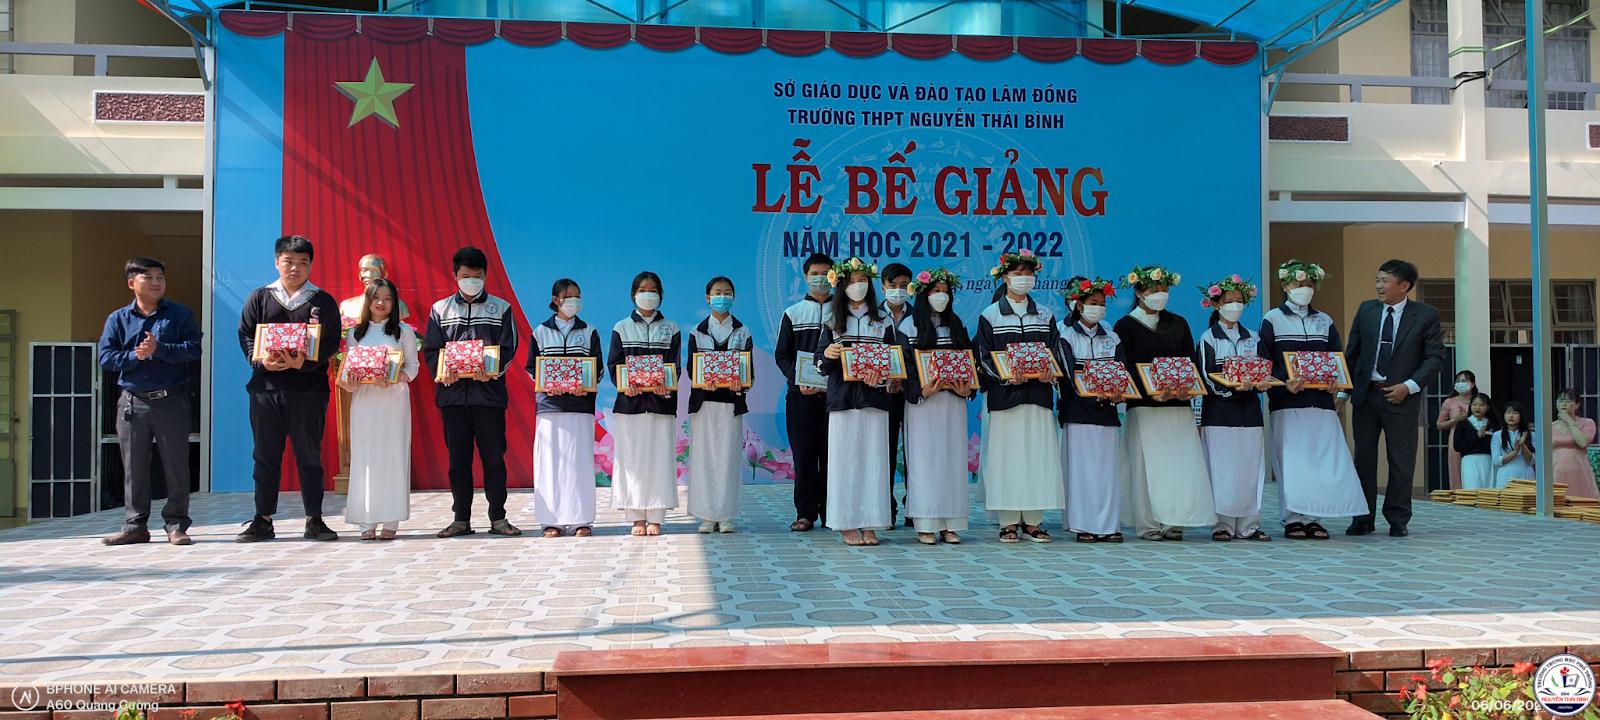 Đánh Giá Trường THPT Nguyễn Thái Bình Lâm Đồng Có Tốt Không